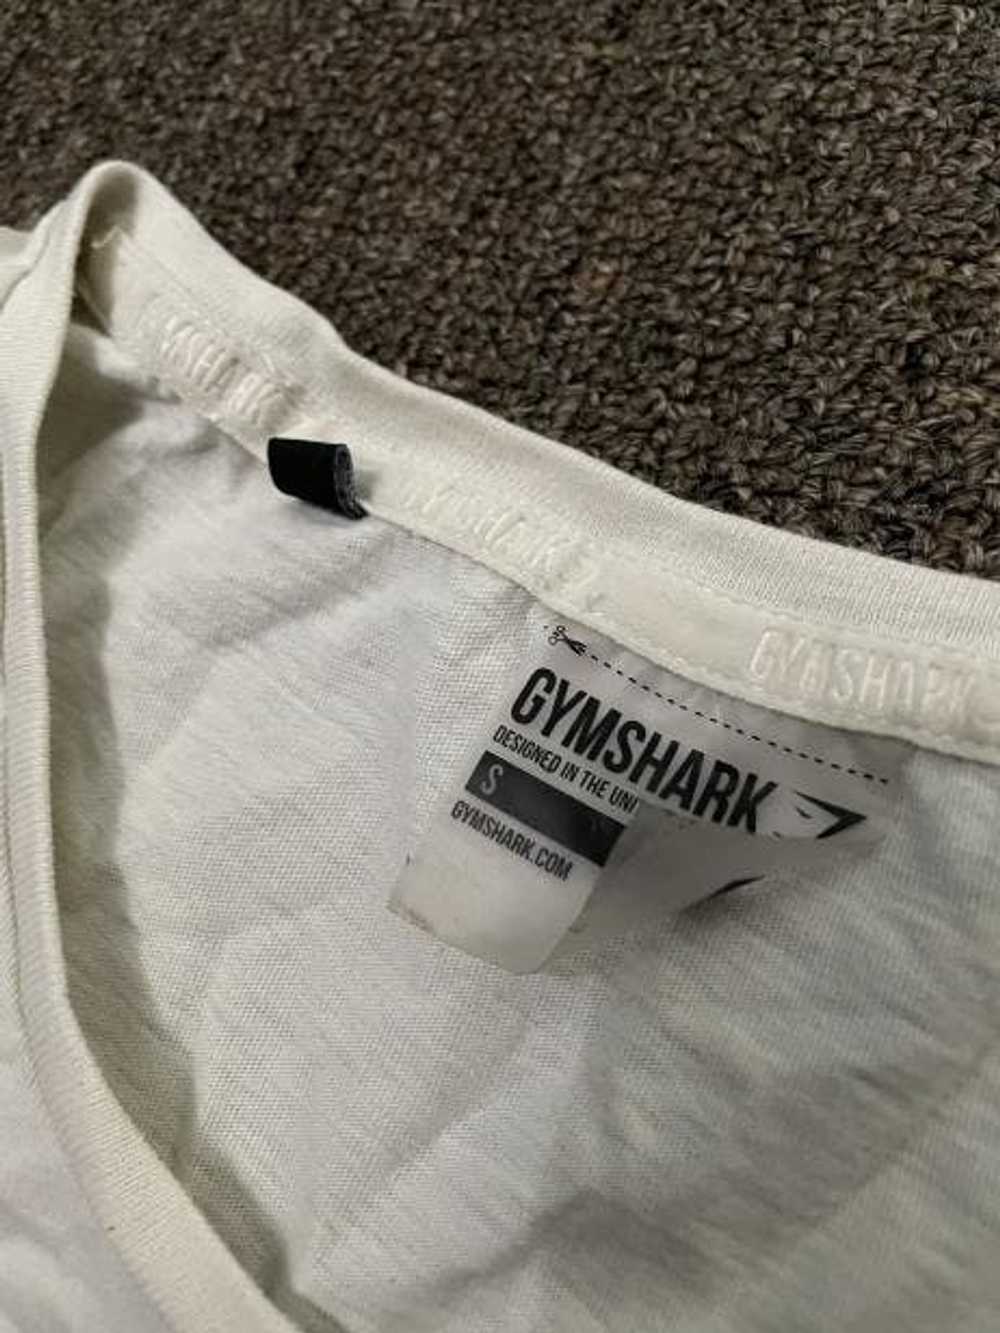 Gymshark Gymshark//Steve Cook T-Shirt - Black